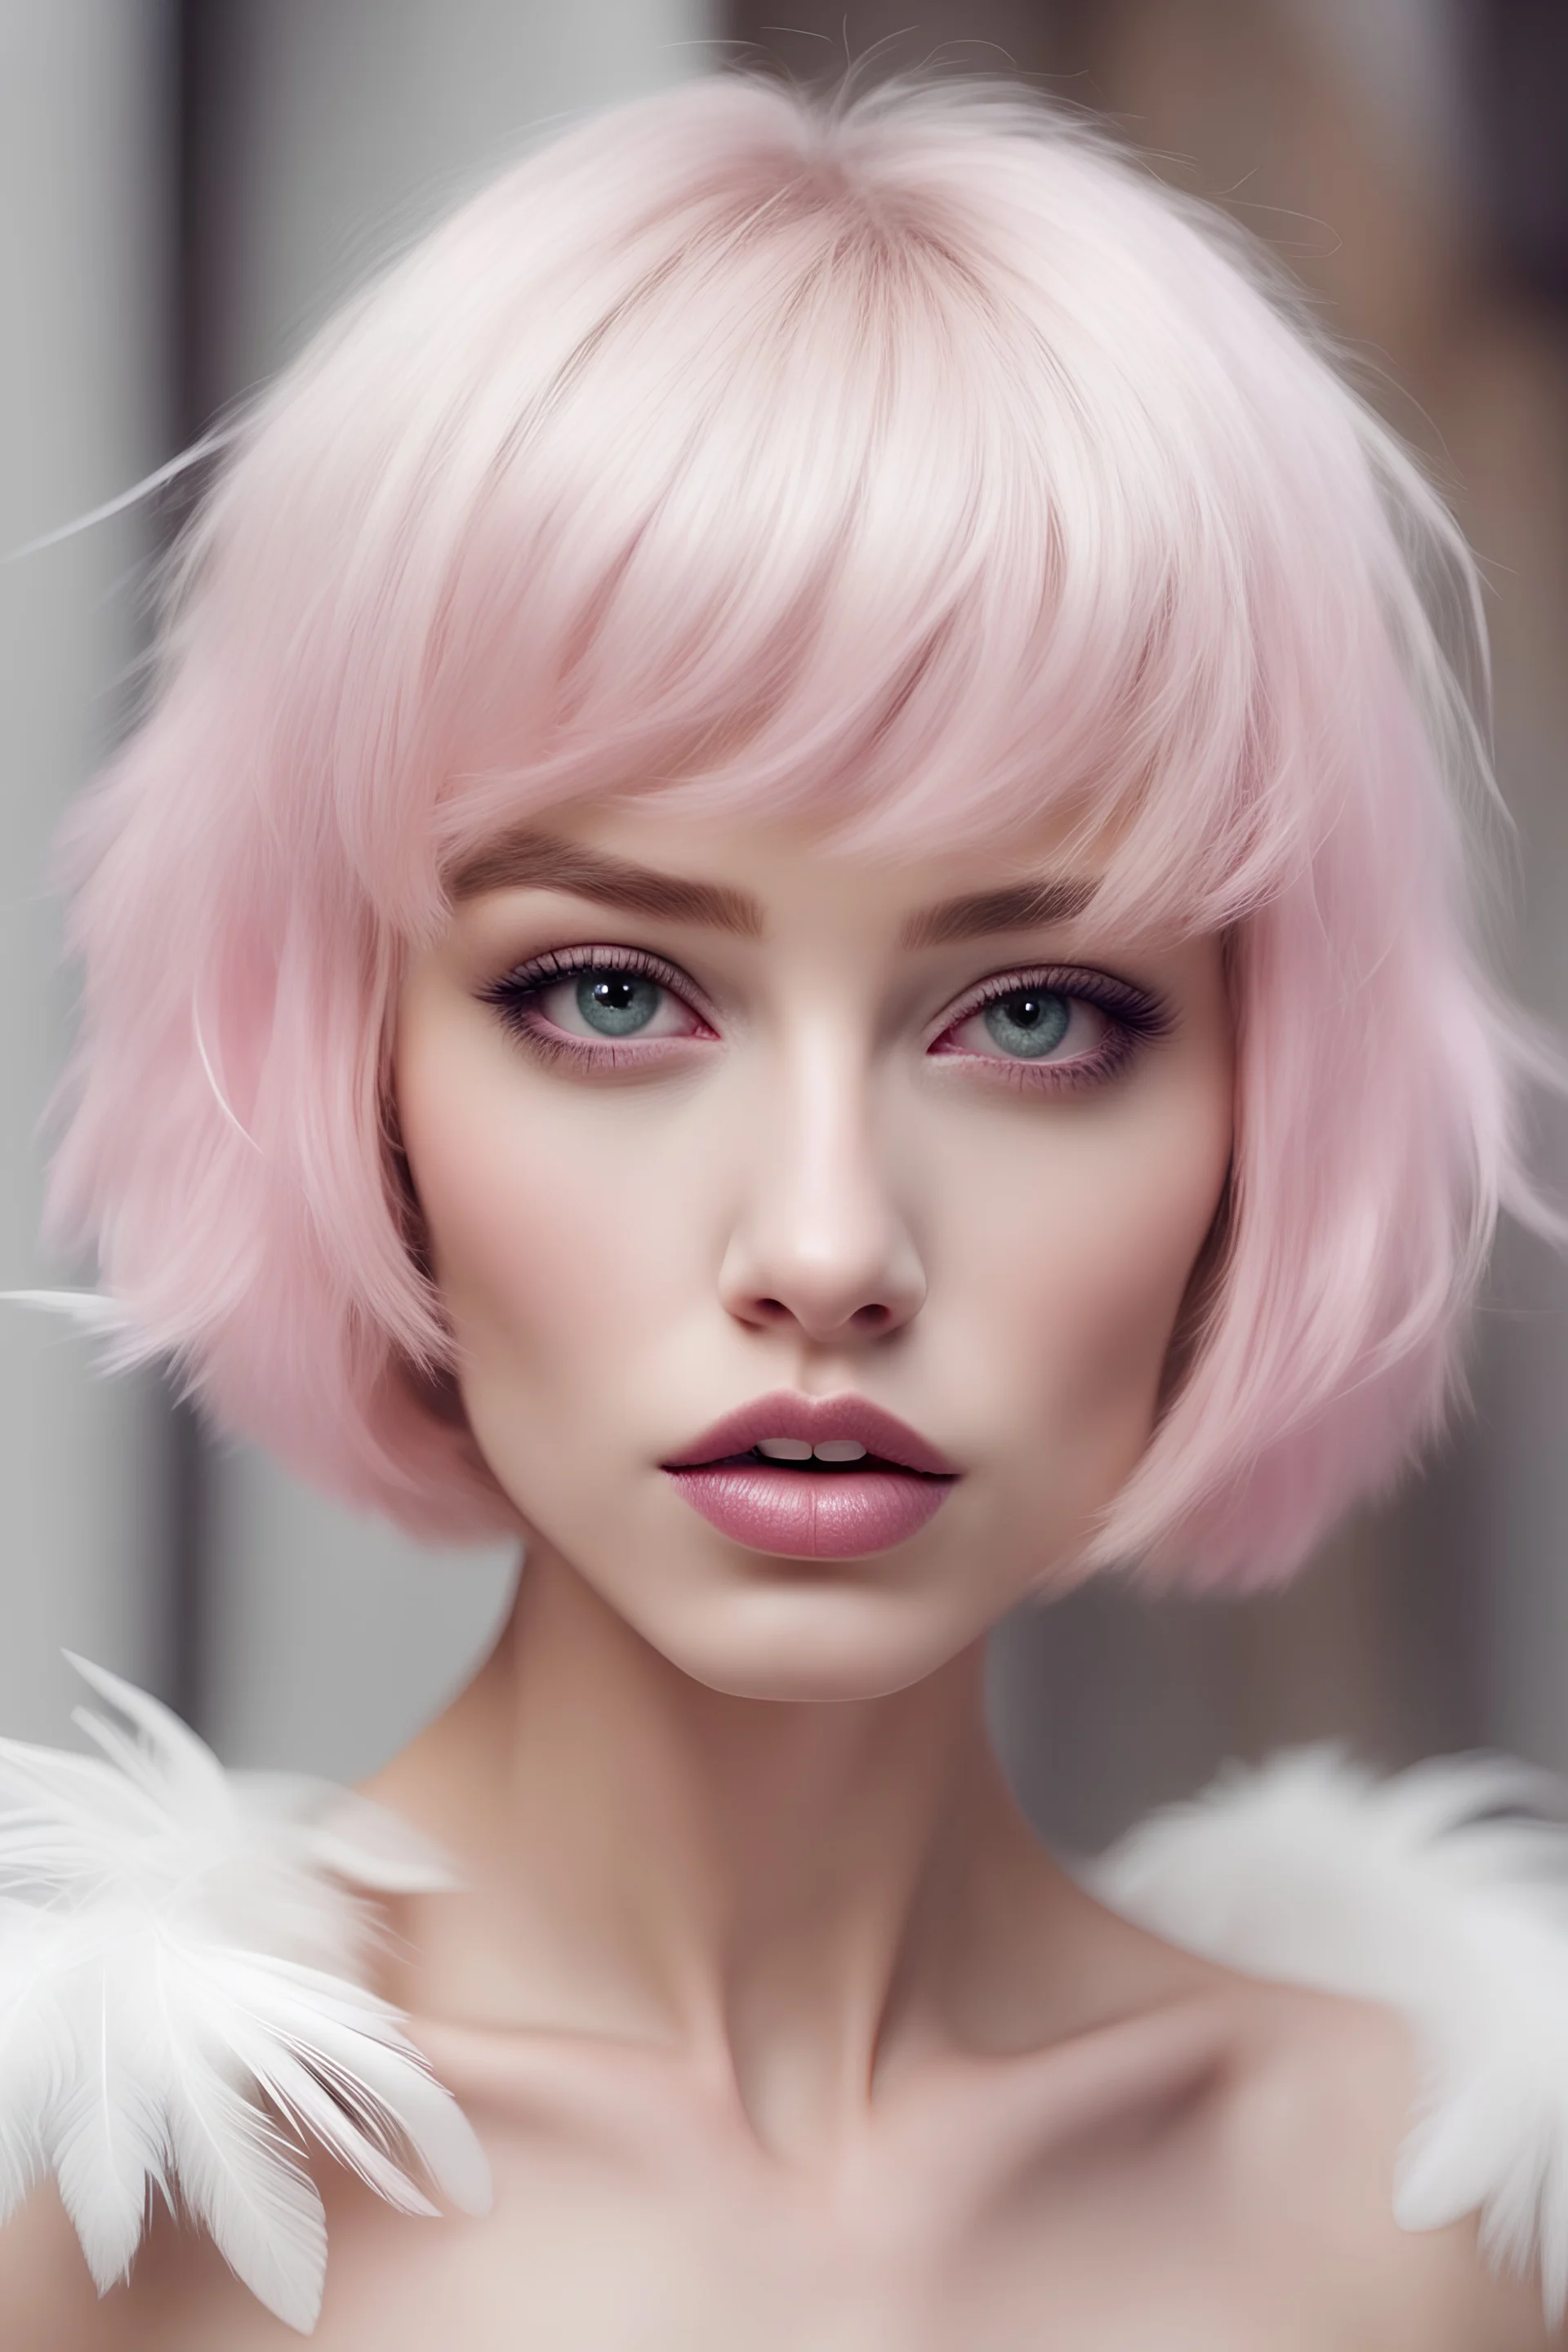 Cewek cantik bibir merah muda mata sipit bulu mata lentik kulit putih badan mungil rambut pendek berkilau